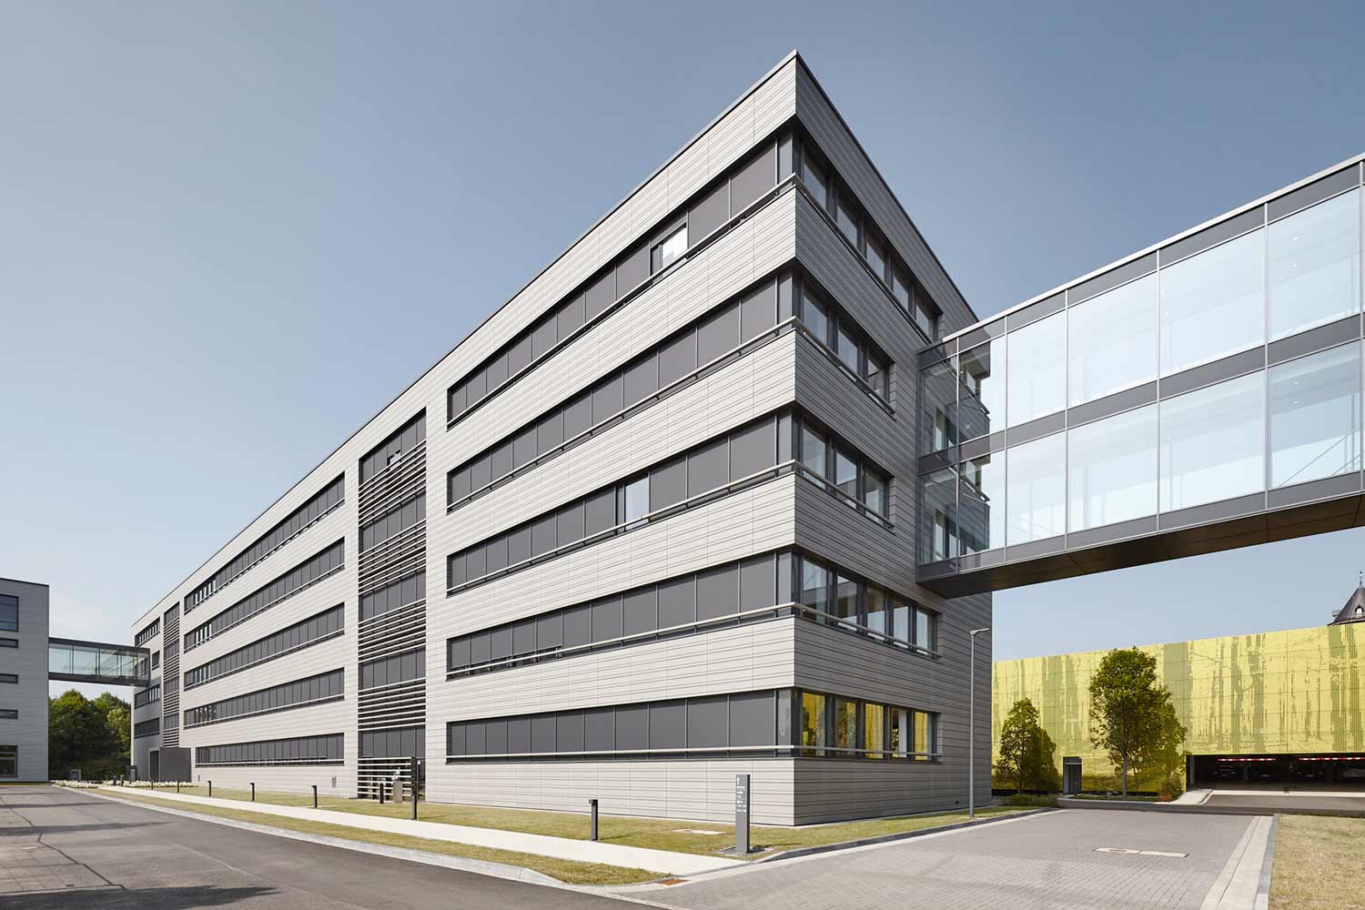 Architekturfotografie NRW Lioba Schneider: Neubau der Firmenzentrale in Essen für ALDI Süd. Mehrstöckige kubische Baukörper werden durch durchgehende Fensterbänder gerastert.